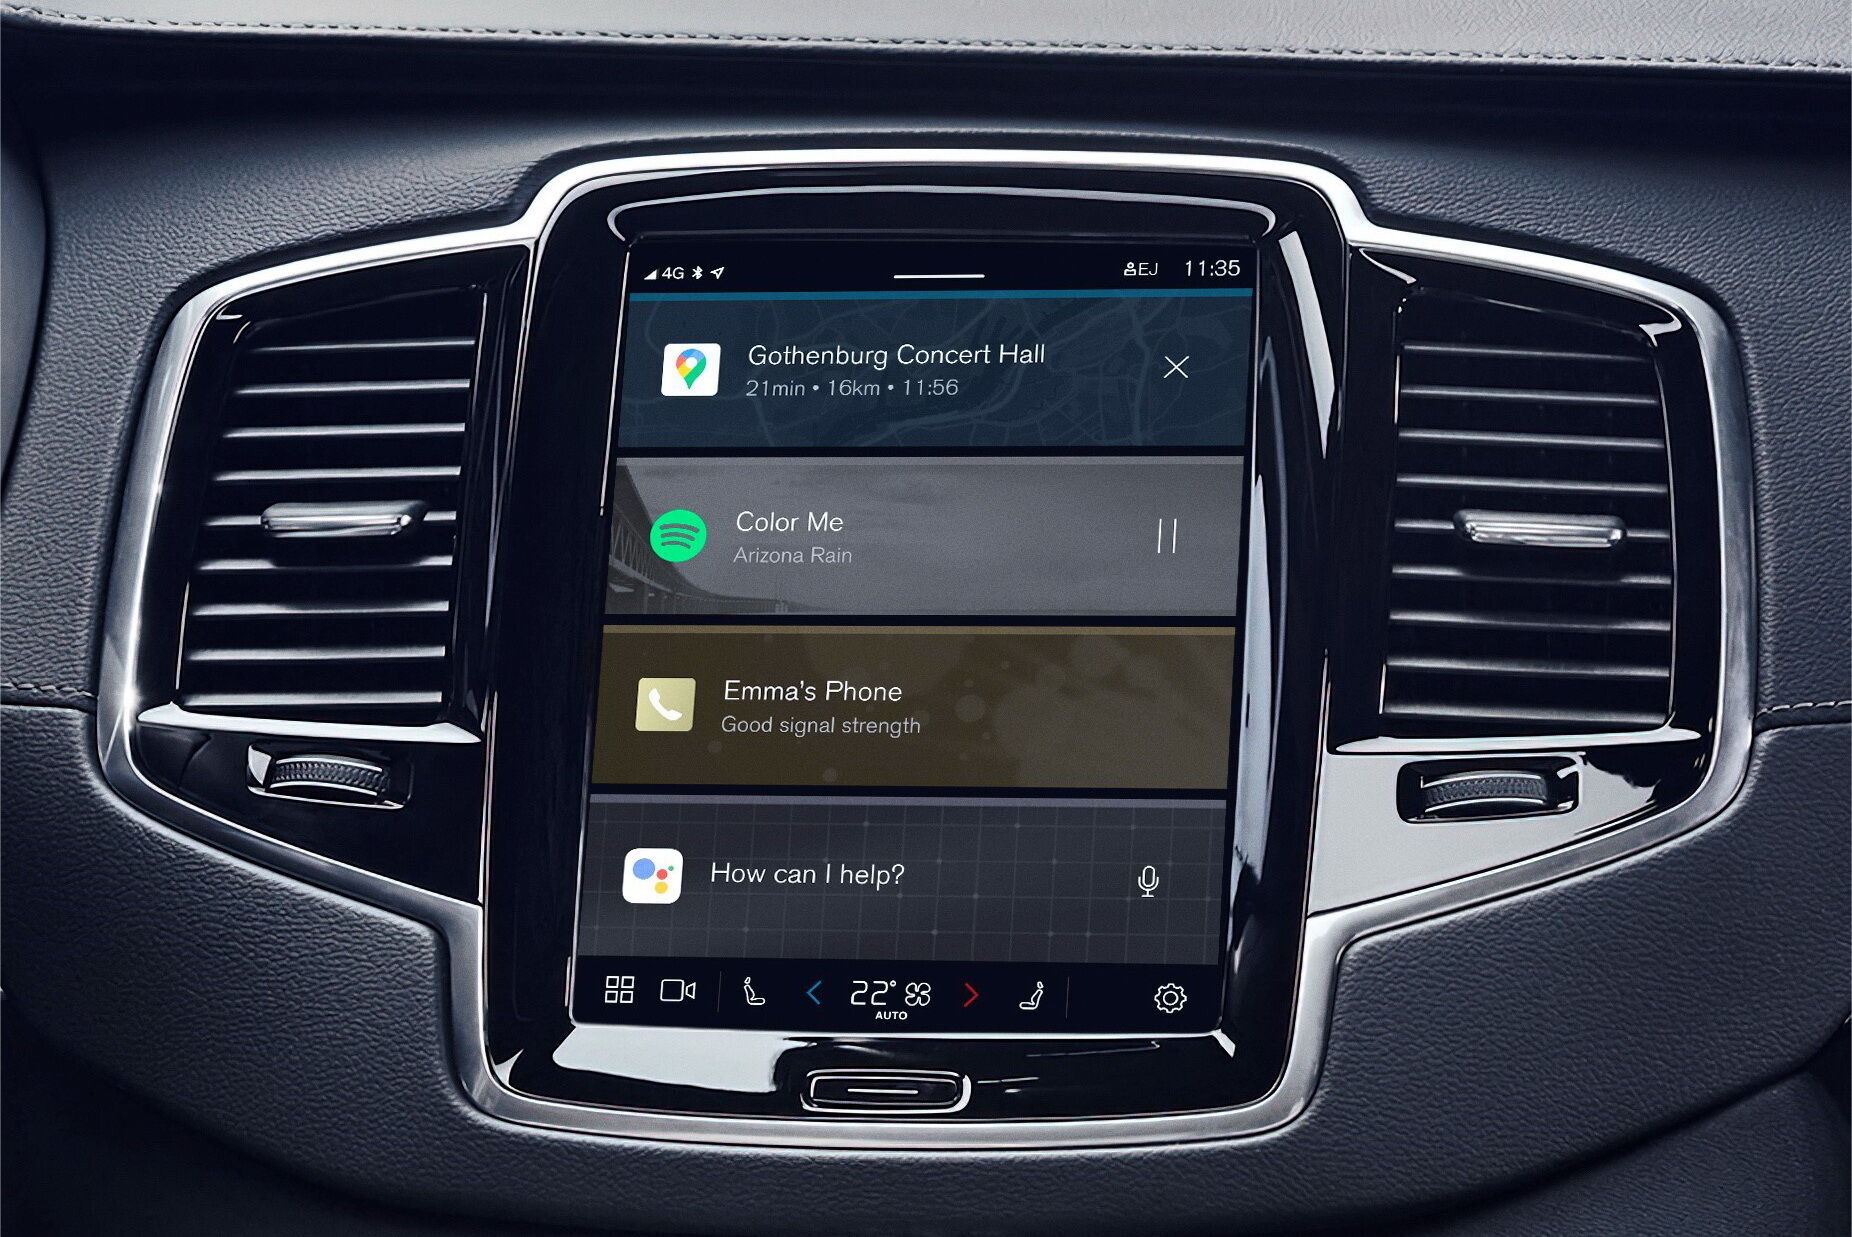 Власники сучасних моделей Volvo отримають оновлення інформаційно-розважальної системи до нової версії Android 11